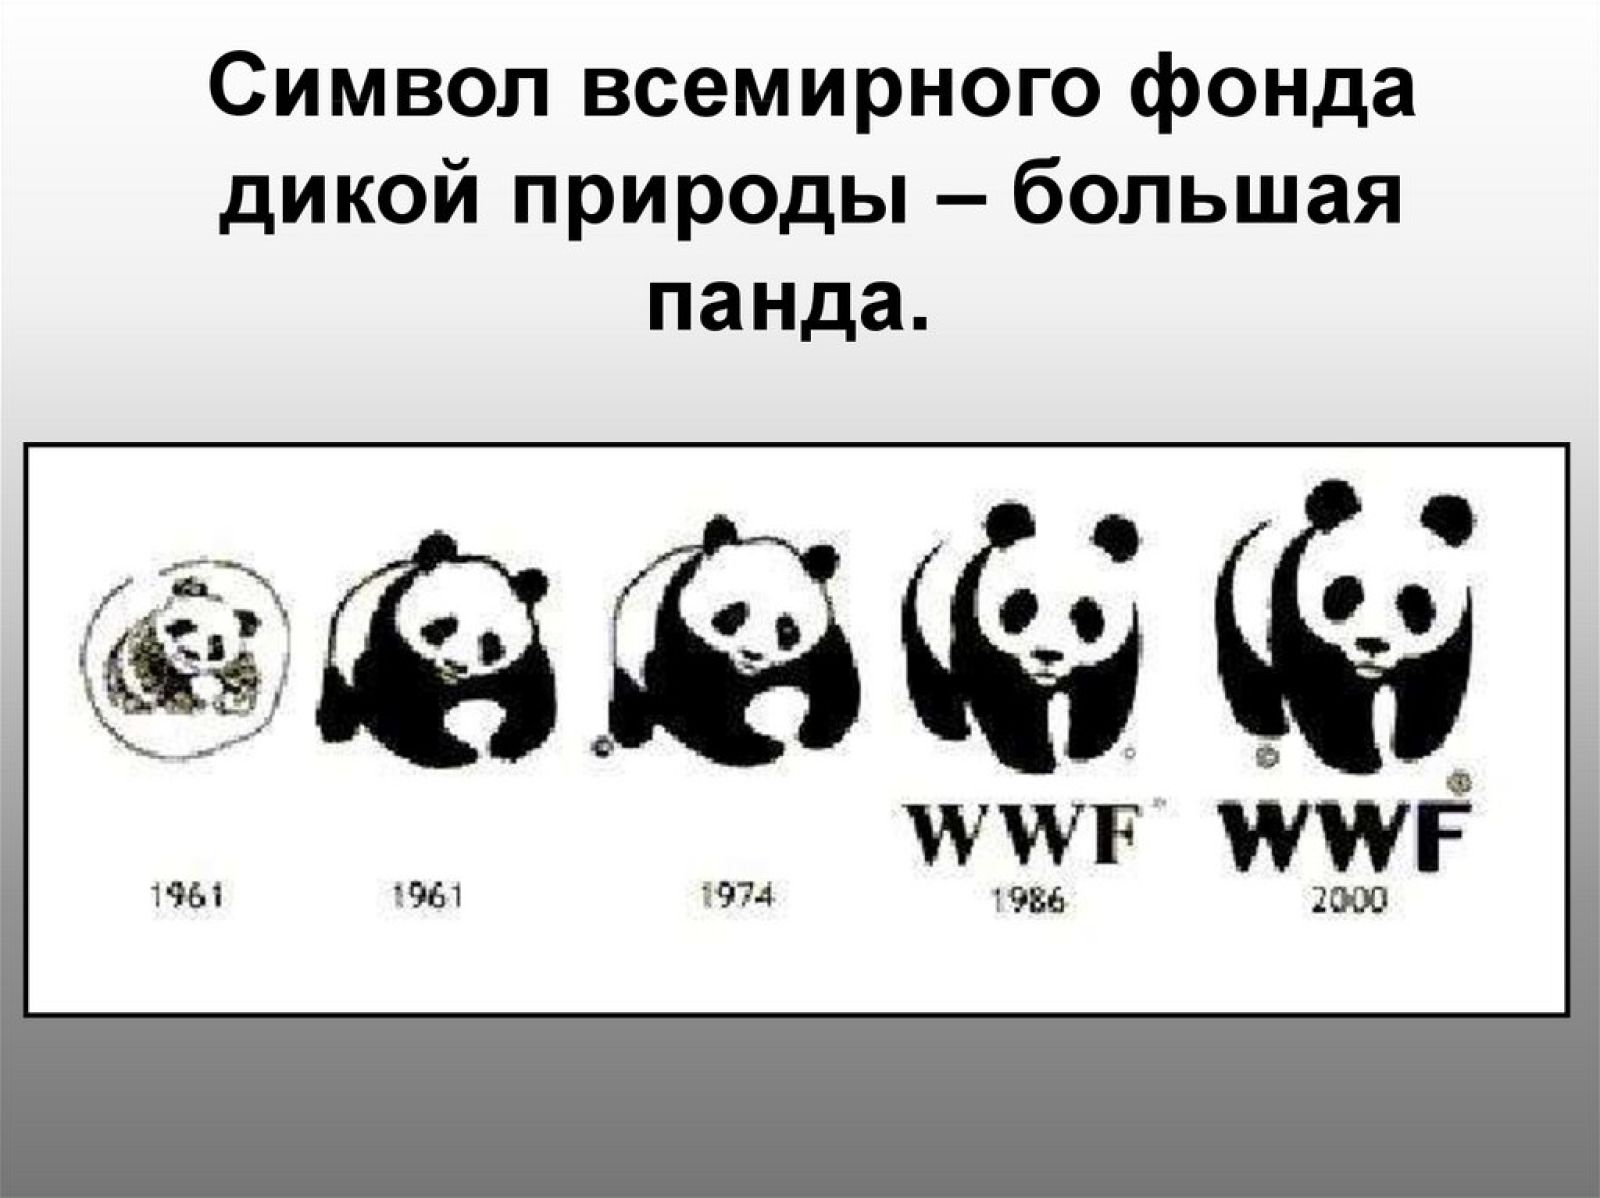 Символ дикой природы. Фонд дикой природы WWF В России. Панда Всемирный фонд дикой природы. Всемирный фонд дикой природы эмблема. Всемирный фонд охраны дикой природы 1961.